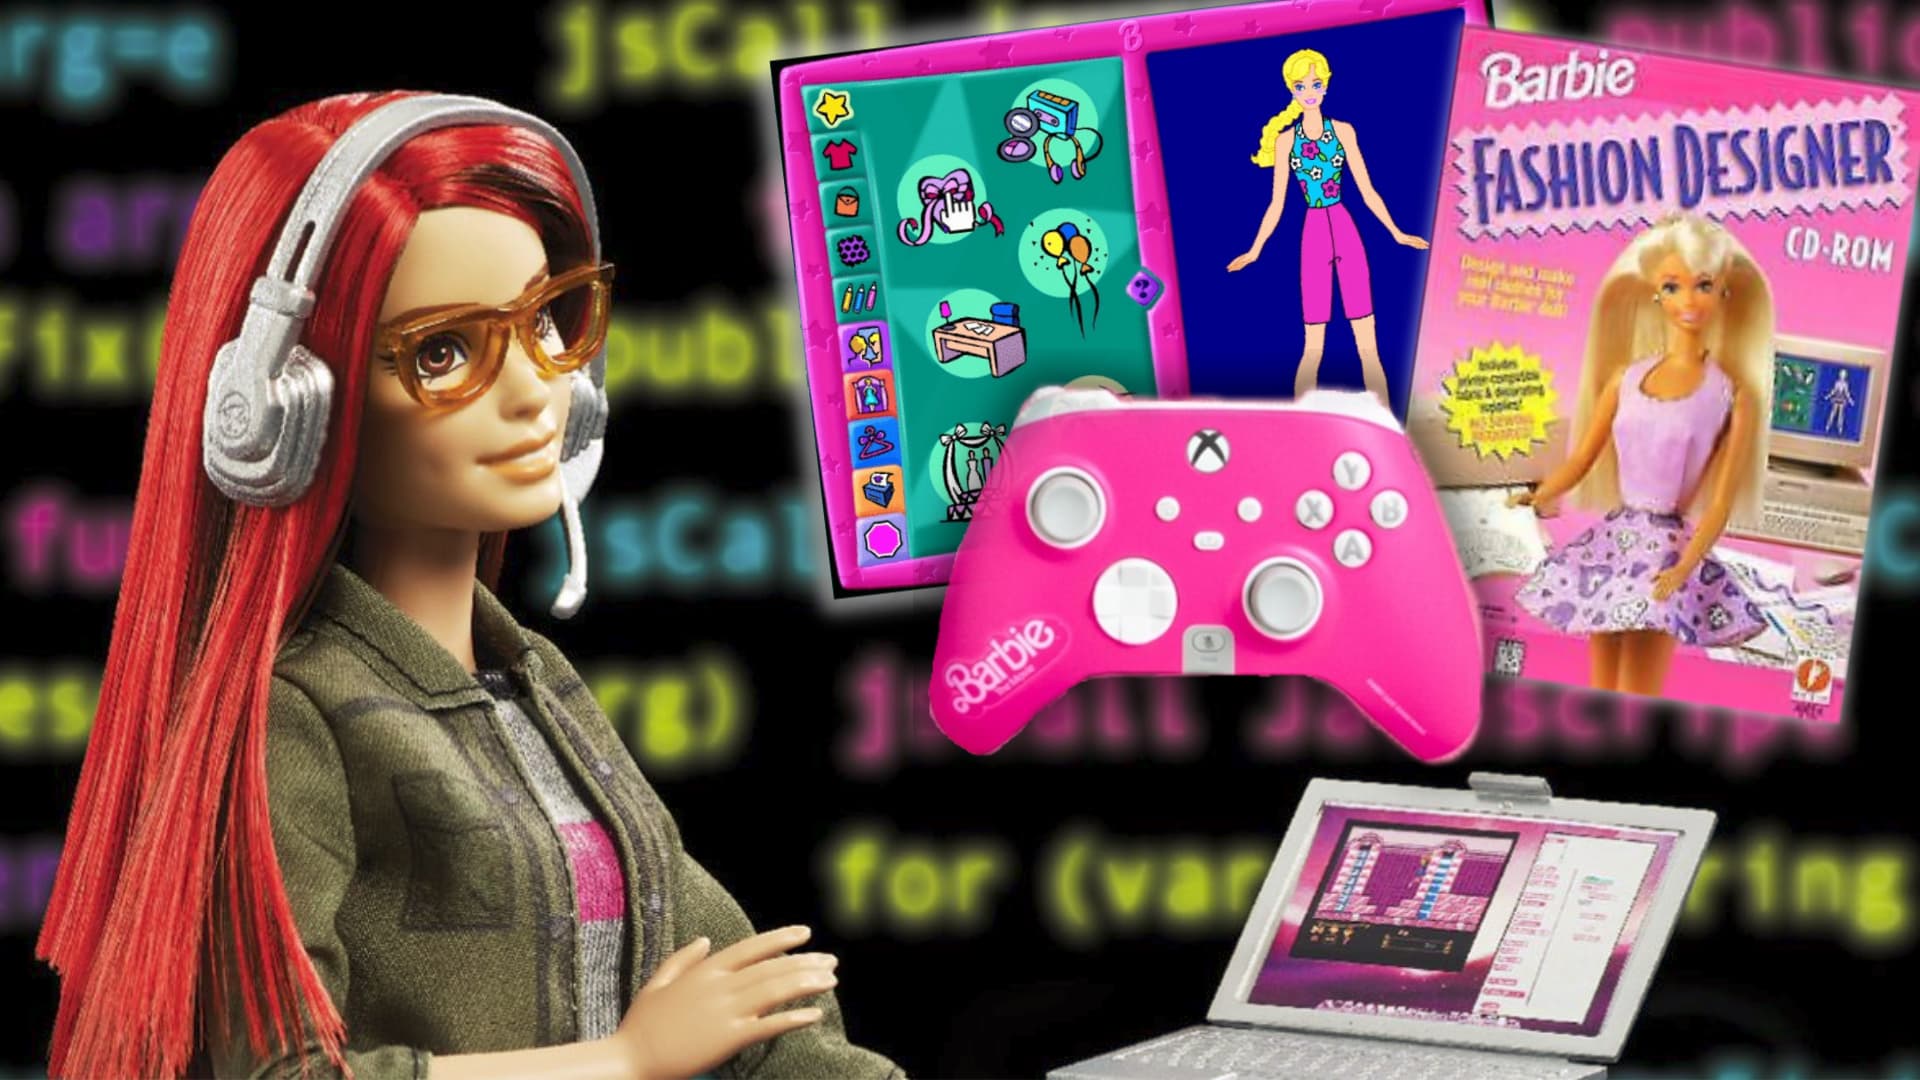 Comment Barbie: Fashion Designer est entré au Hall of Fame des jeux vidéo